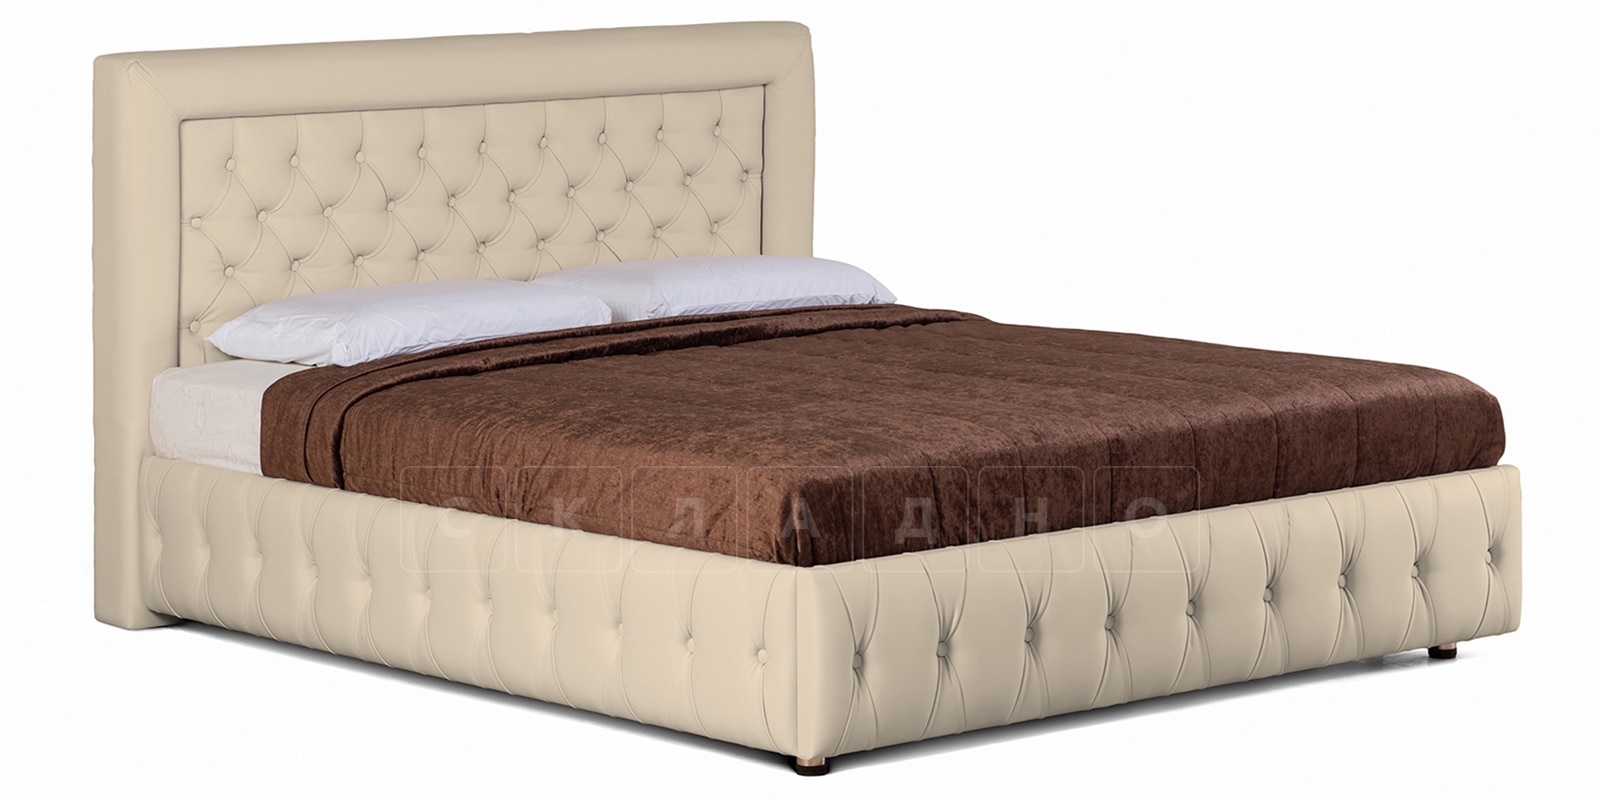 Мягкая кровать Малибу 160 см экокожа бежевый вариант 7 фото 1 | интернет-магазин Складно